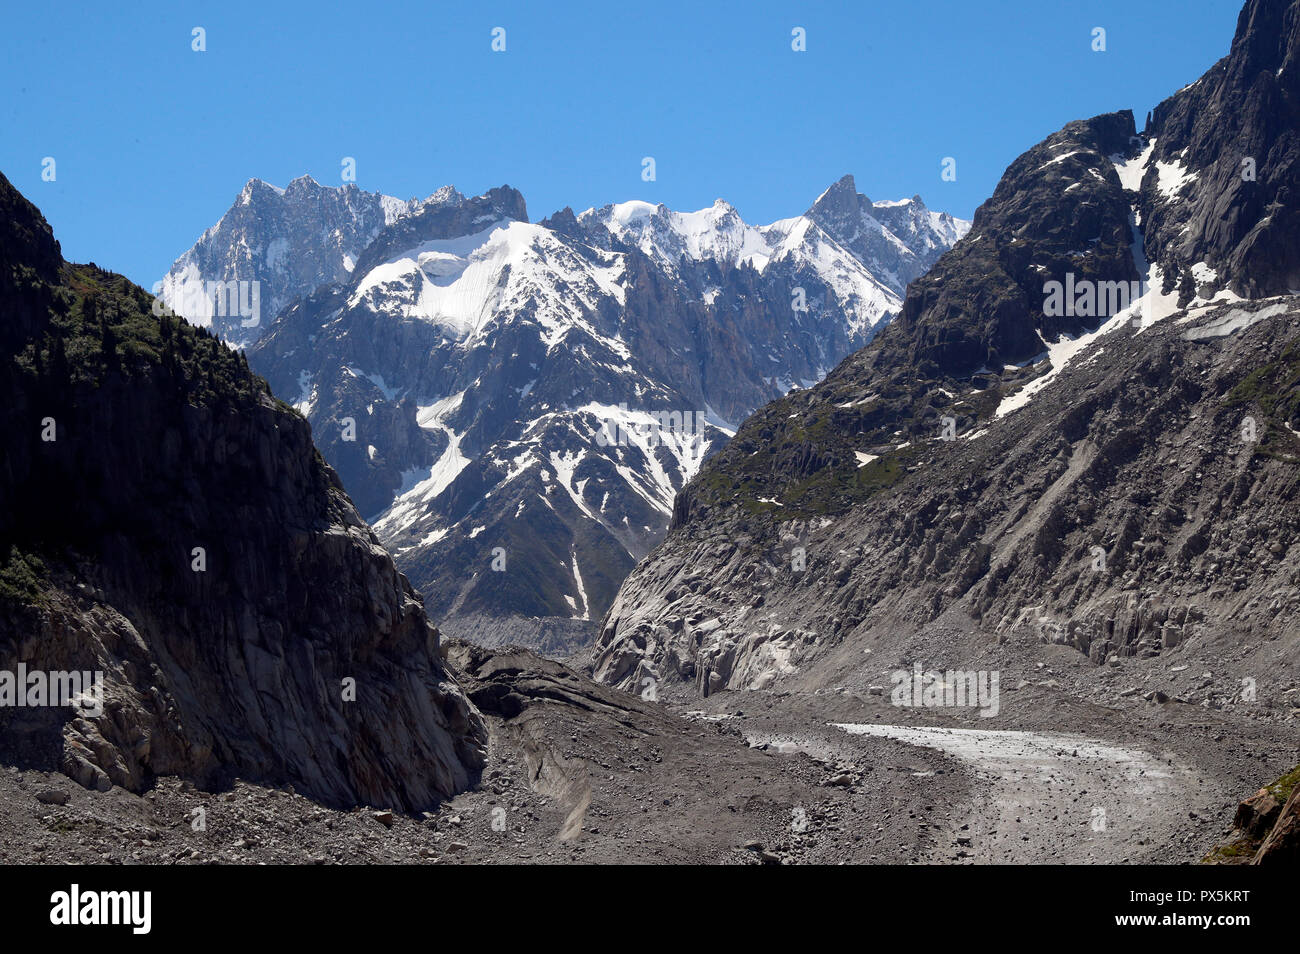 Sulle Alpi francesi. Massiccio del Monte Bianco. La Mer de Glace ghiacciaio che è assottigliata 150 metri dal 1820, e si ritirarono da 2300 metri. Chamonix. La Francia. Foto Stock